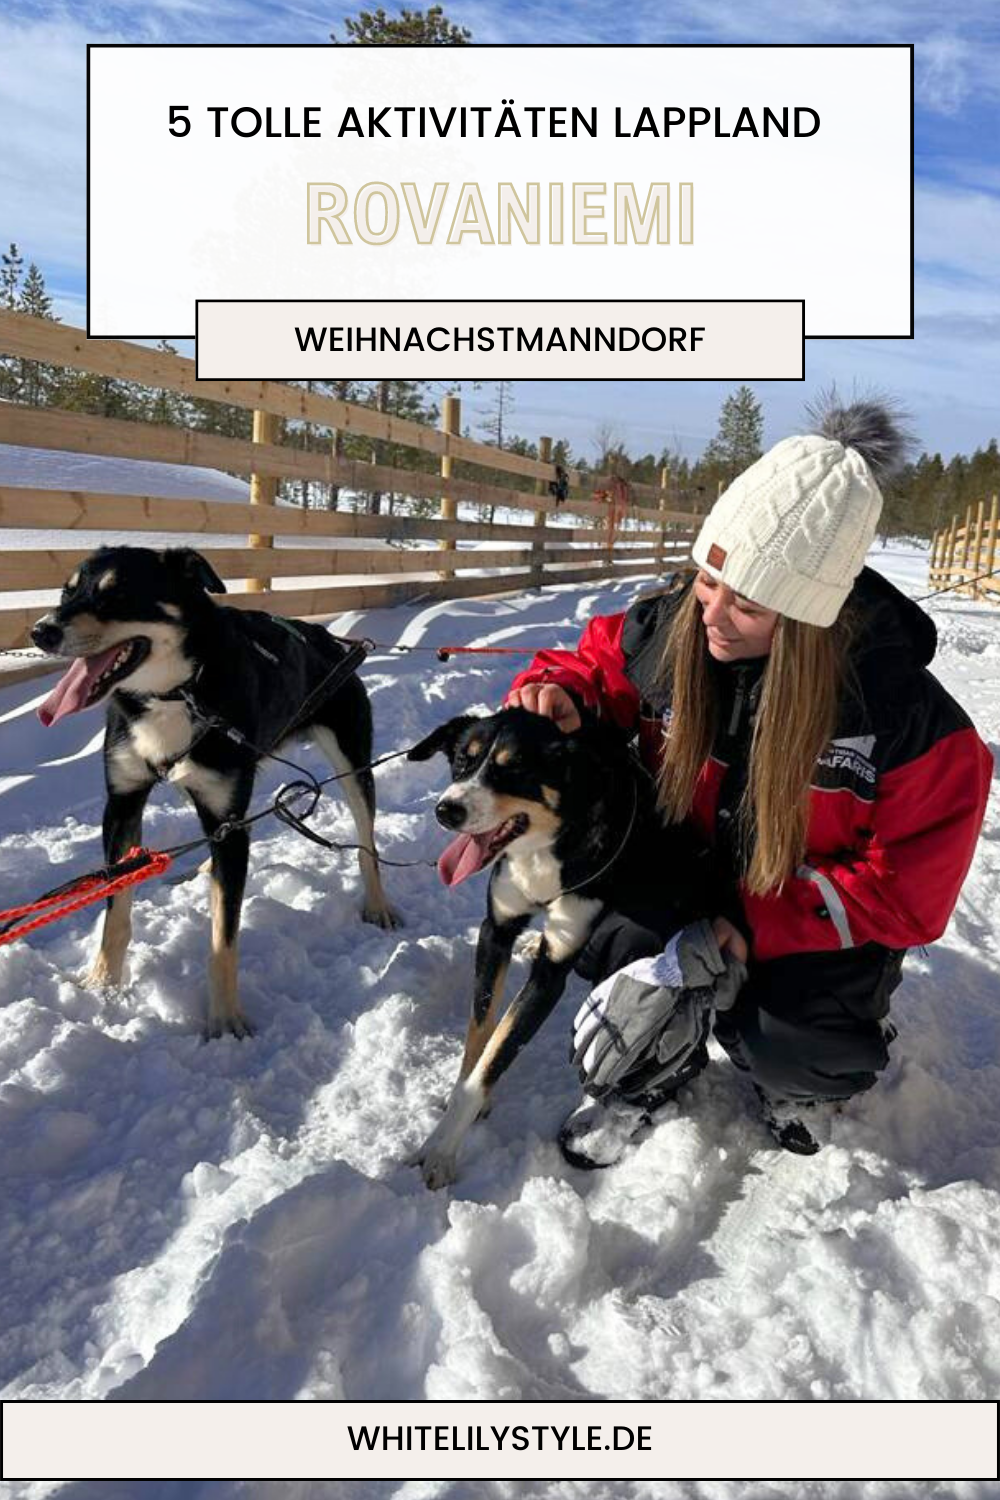 Weihnachtsmanndorf in Rovaniemi - Ein unvergessliches Winterabenteuer